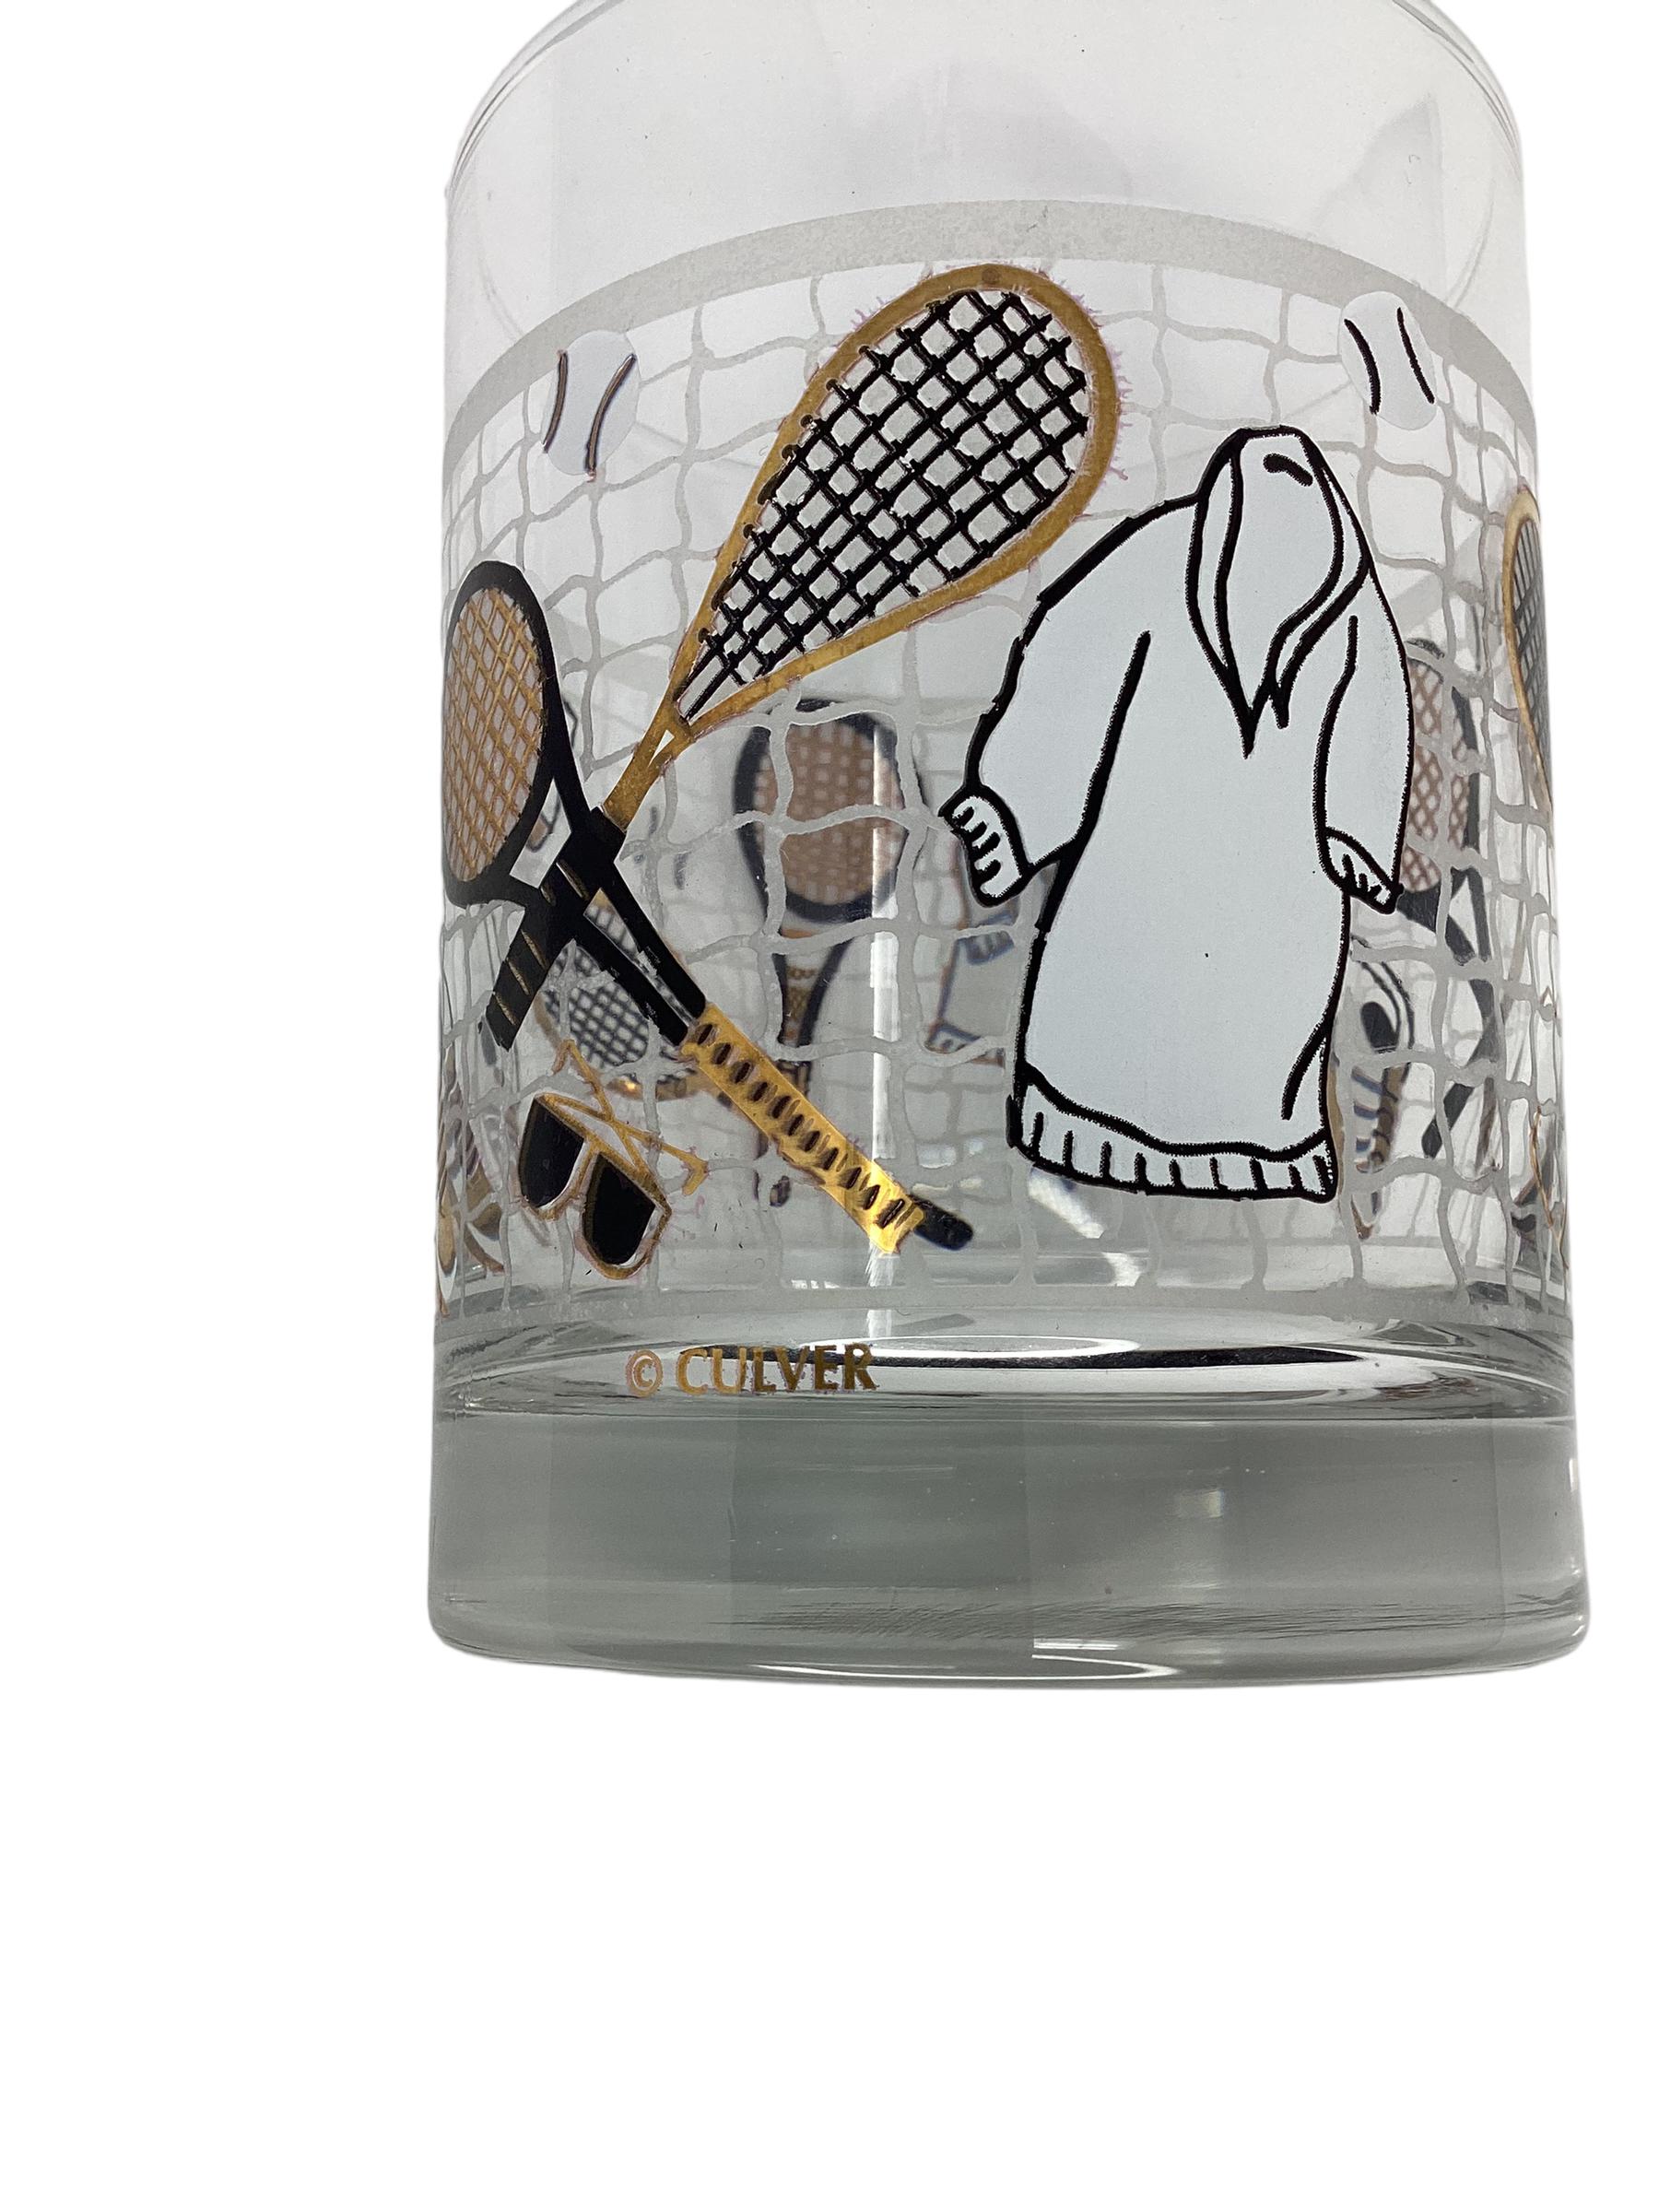 Satz von 4 Culver Tennis Rocks Gläsern. Dekoriert mit goldenen und schwarzen Tennisschlägern, Tennisschuhen, Sonnenbrillen, einem Aufwärmgewand und einem Tennisball, der auf einem Tennisnetz aufliegt.